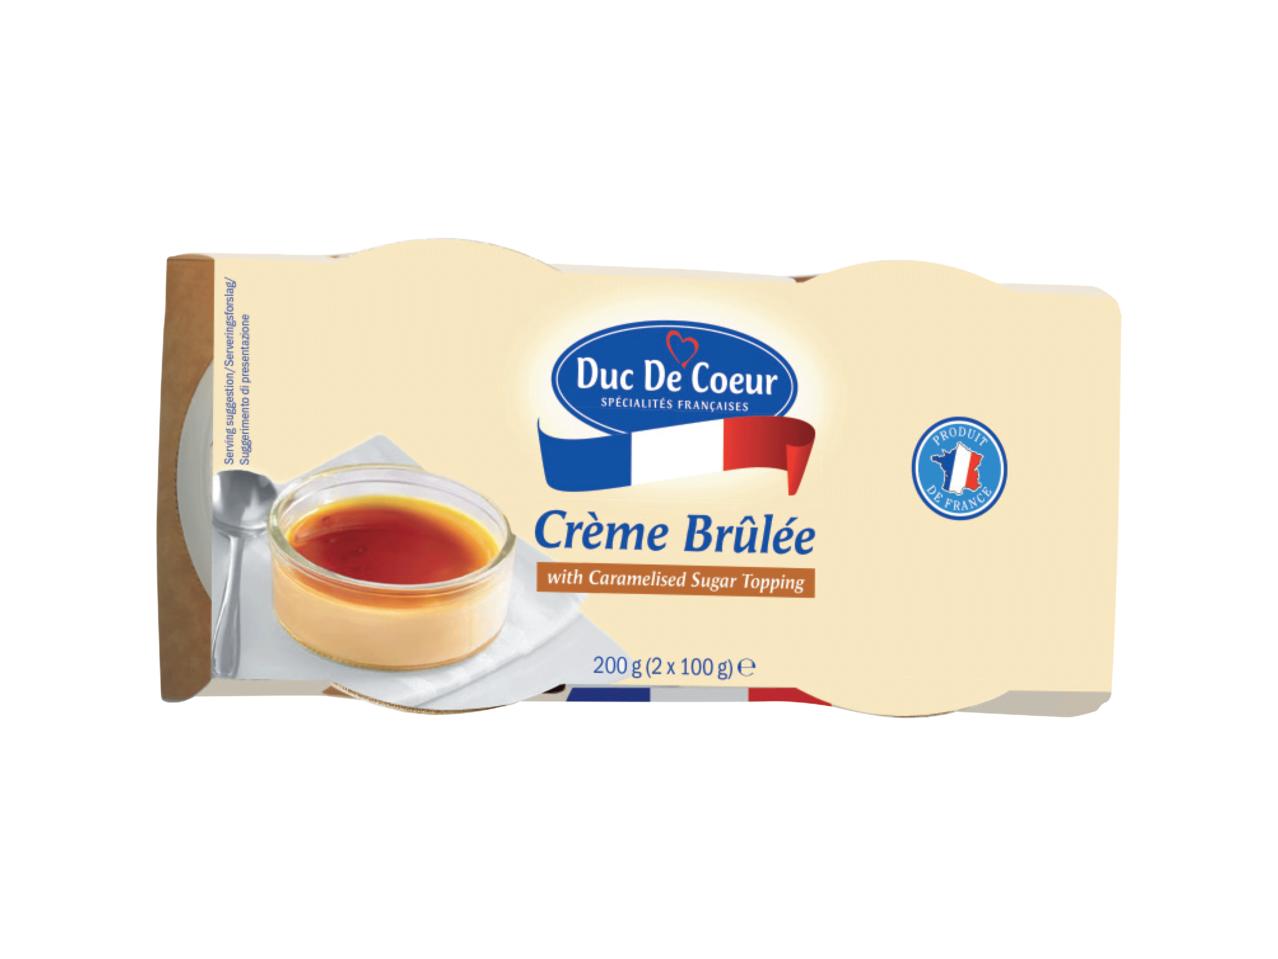 DUC DE COEUR Crème Brûlée